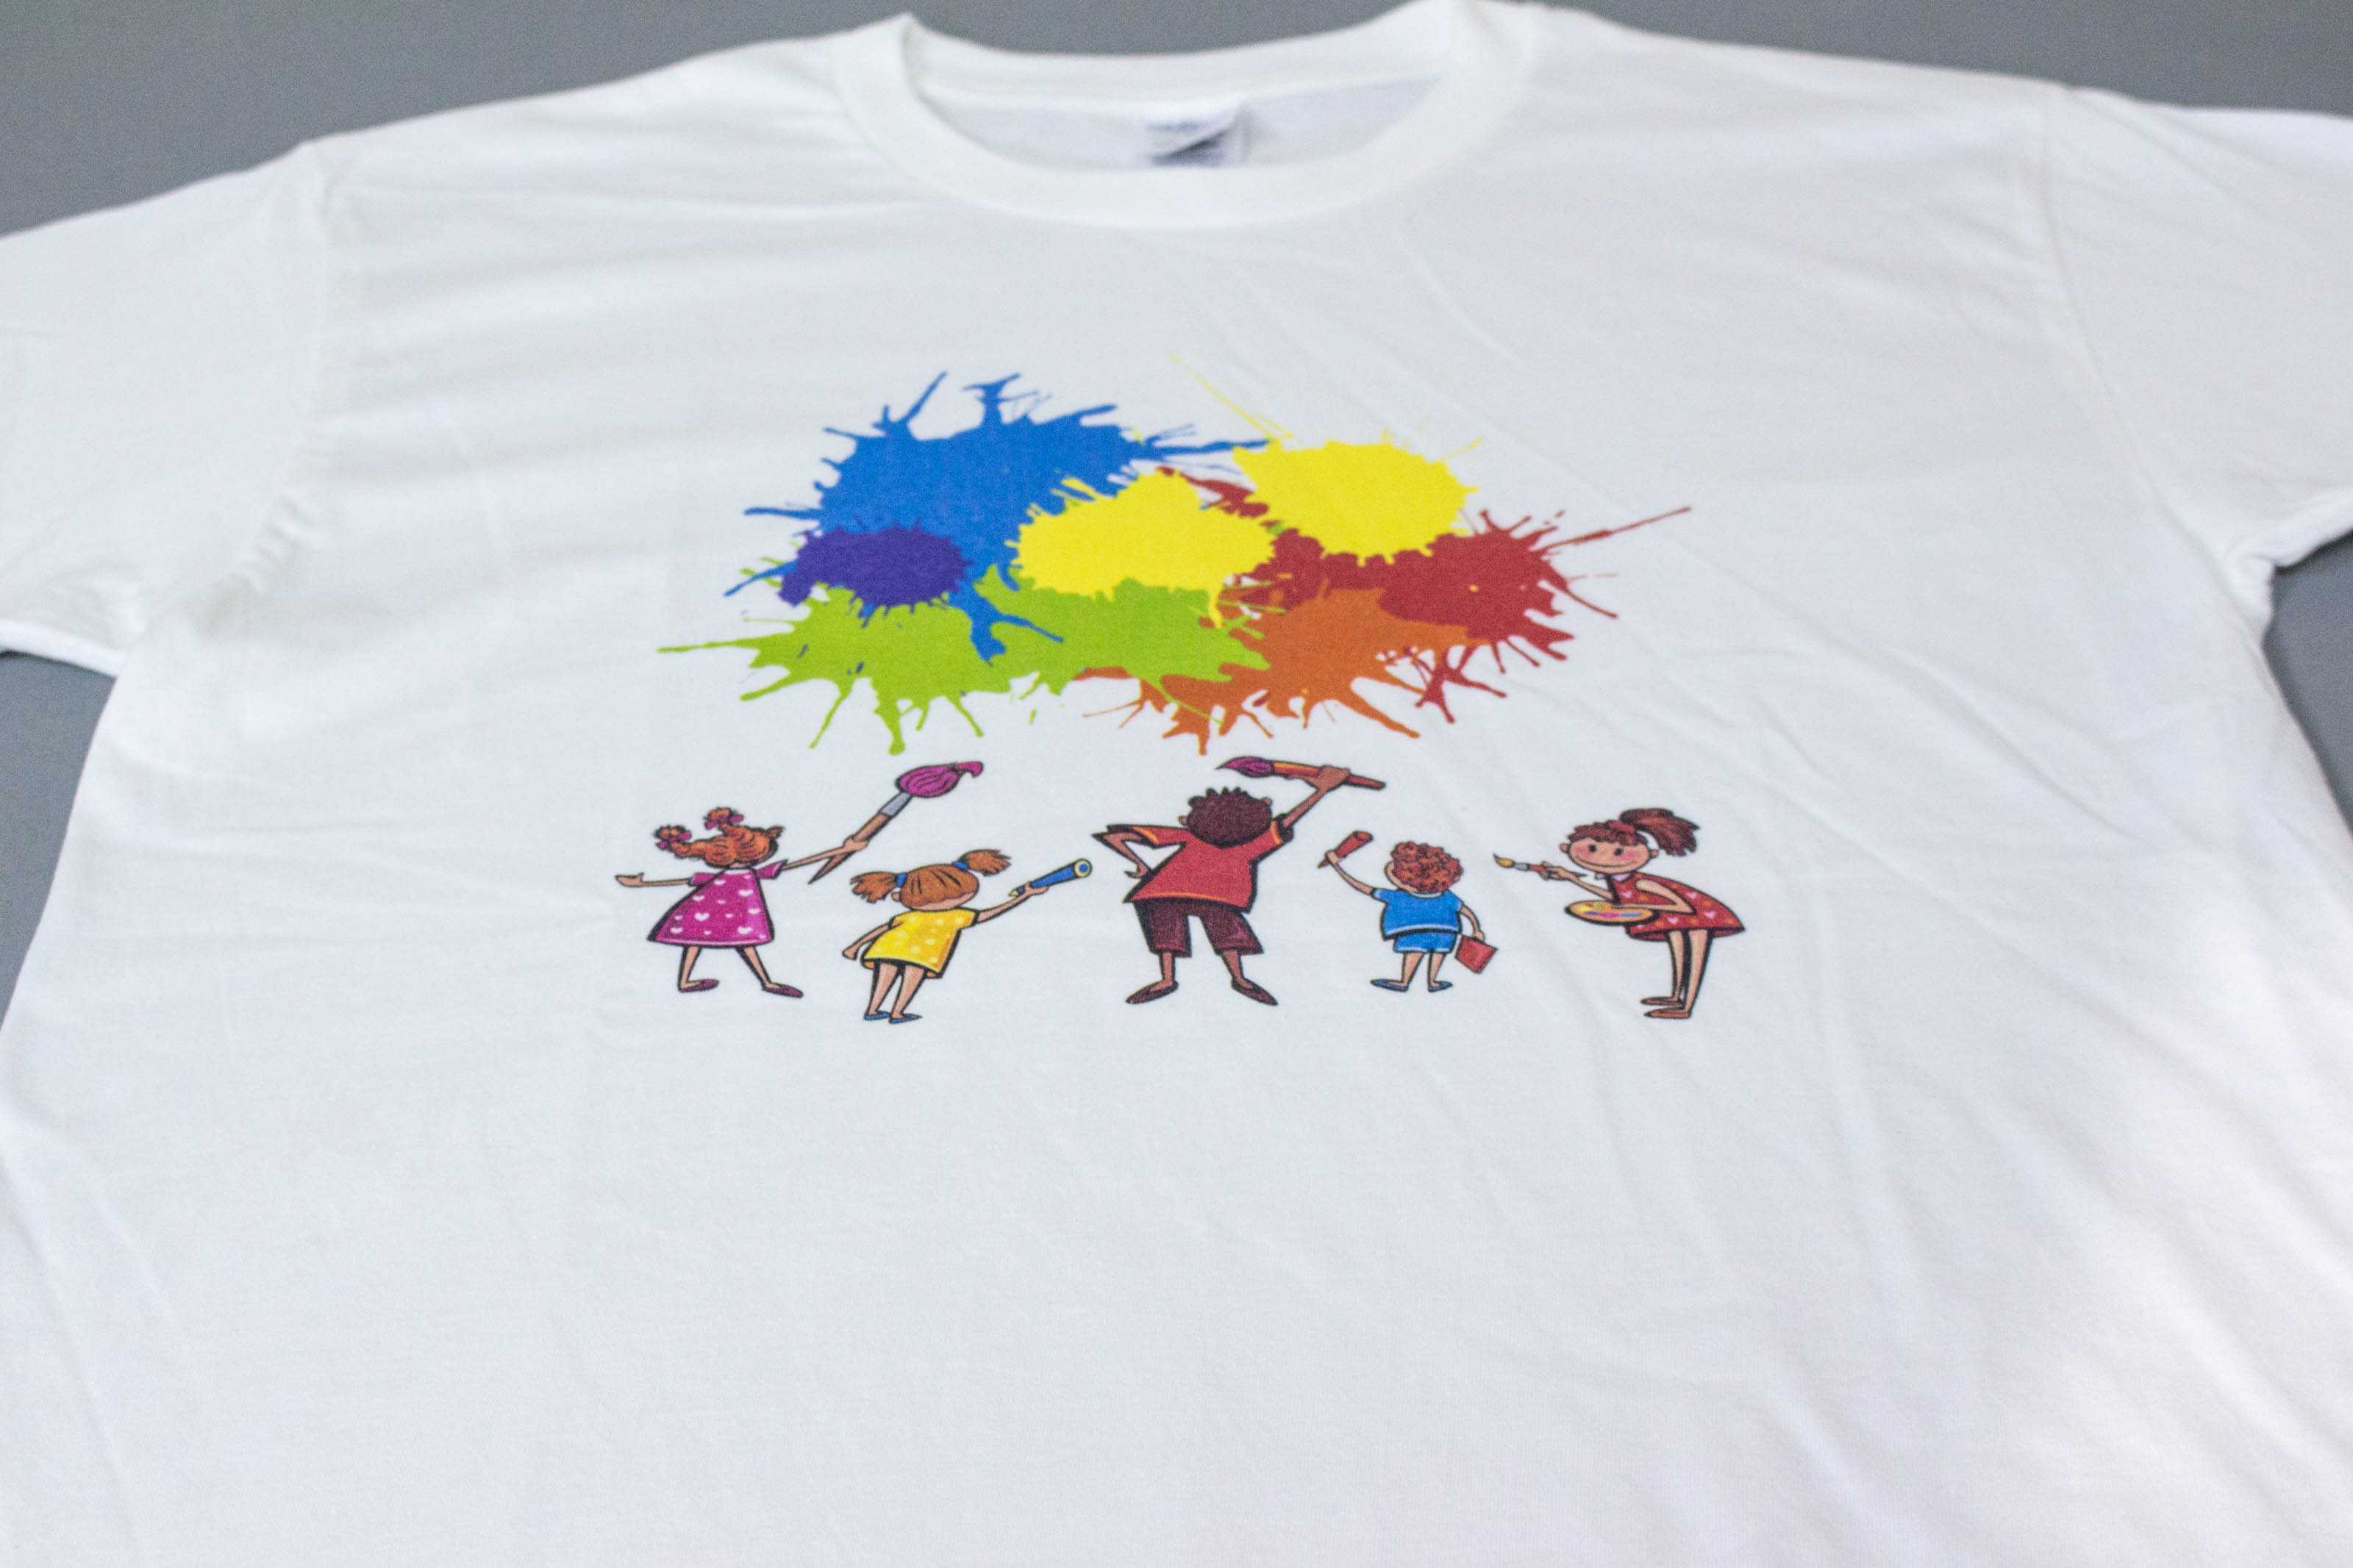 客製化T恤- 彩色塗鴉 客製化T恤的第1張圖(客製化公司制服、班服製作、團體服製作等示意或作品圖)